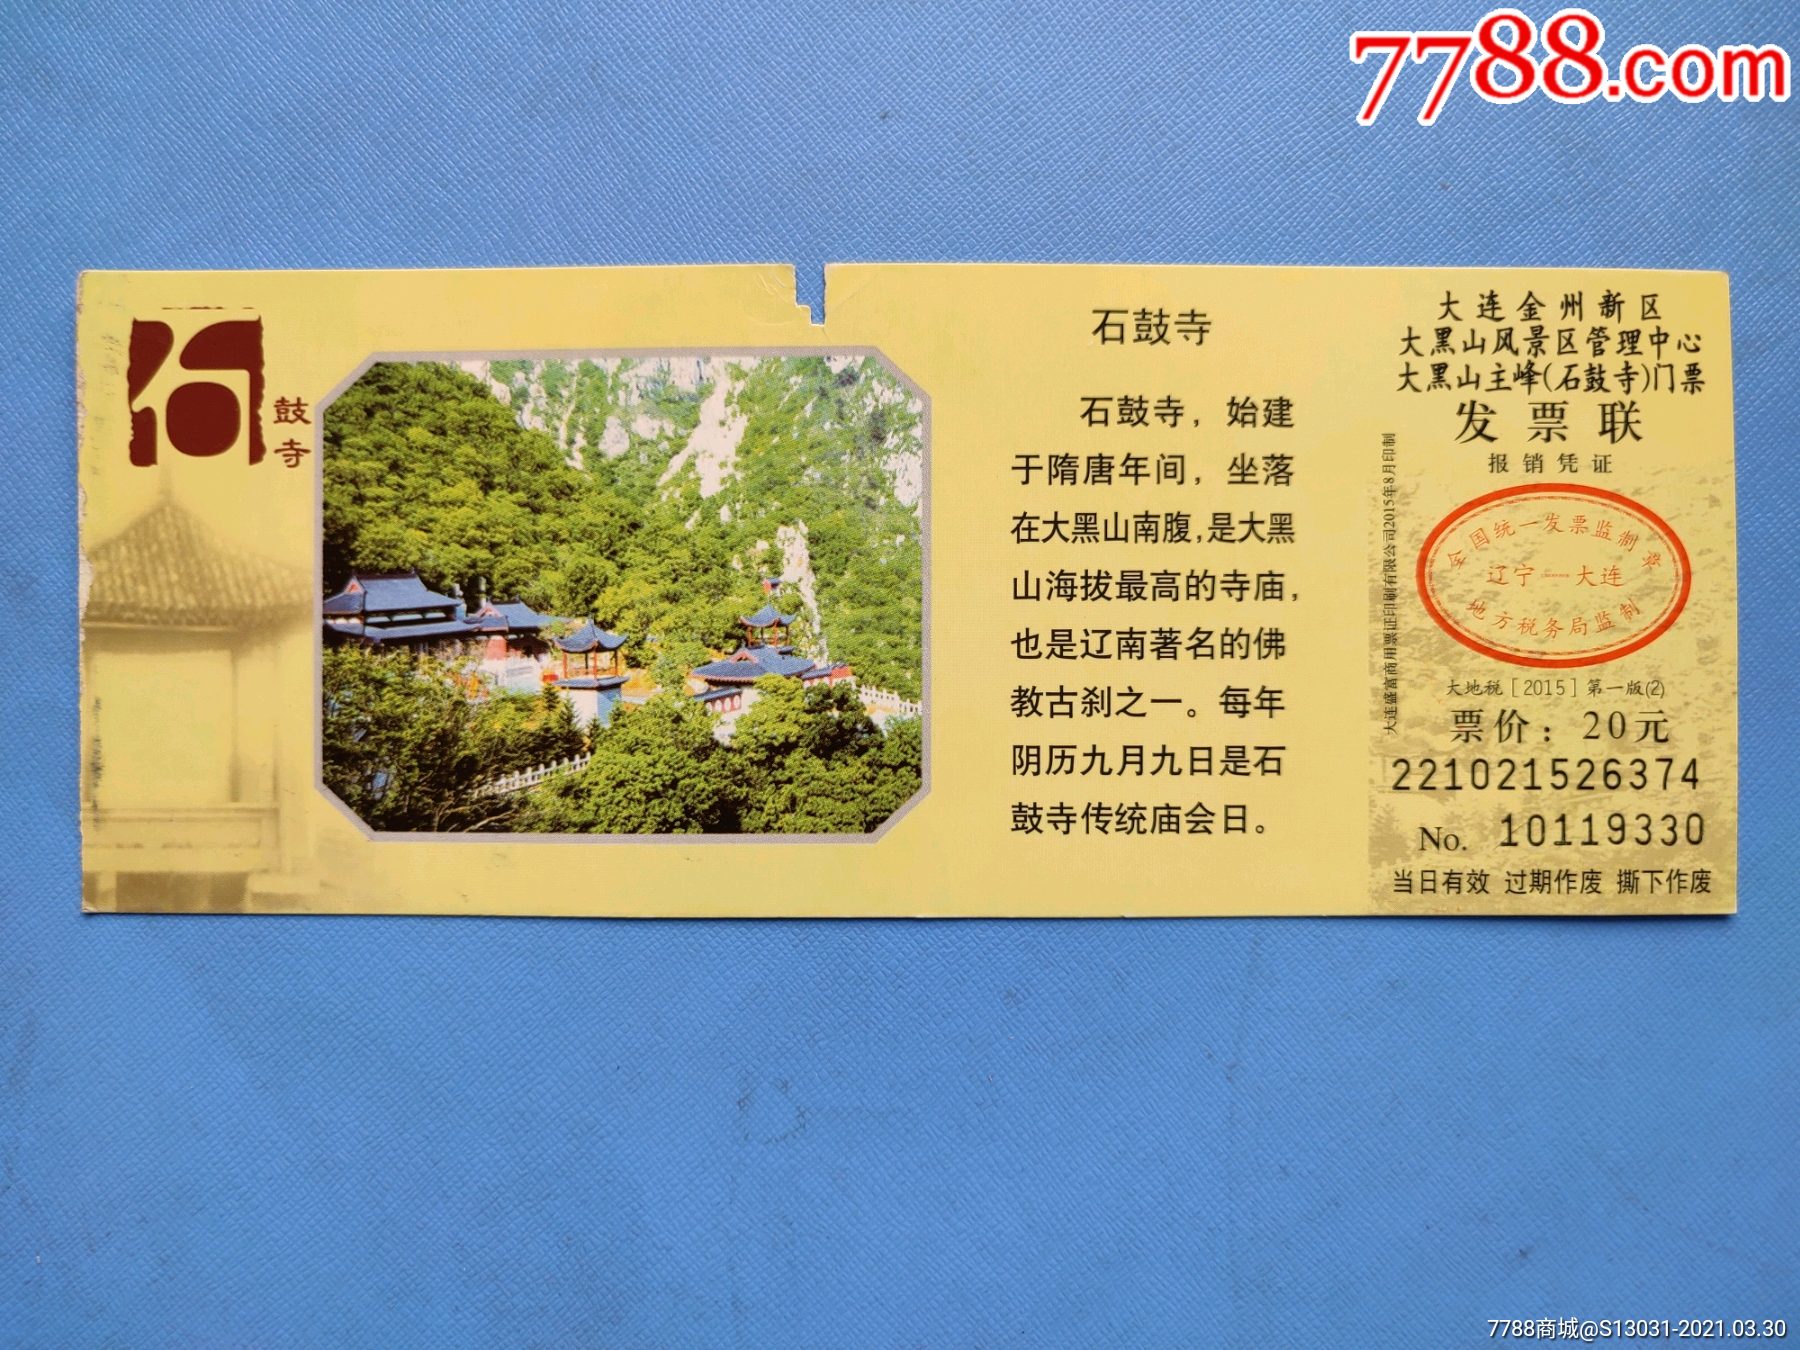 盘石洲风景区门票图片